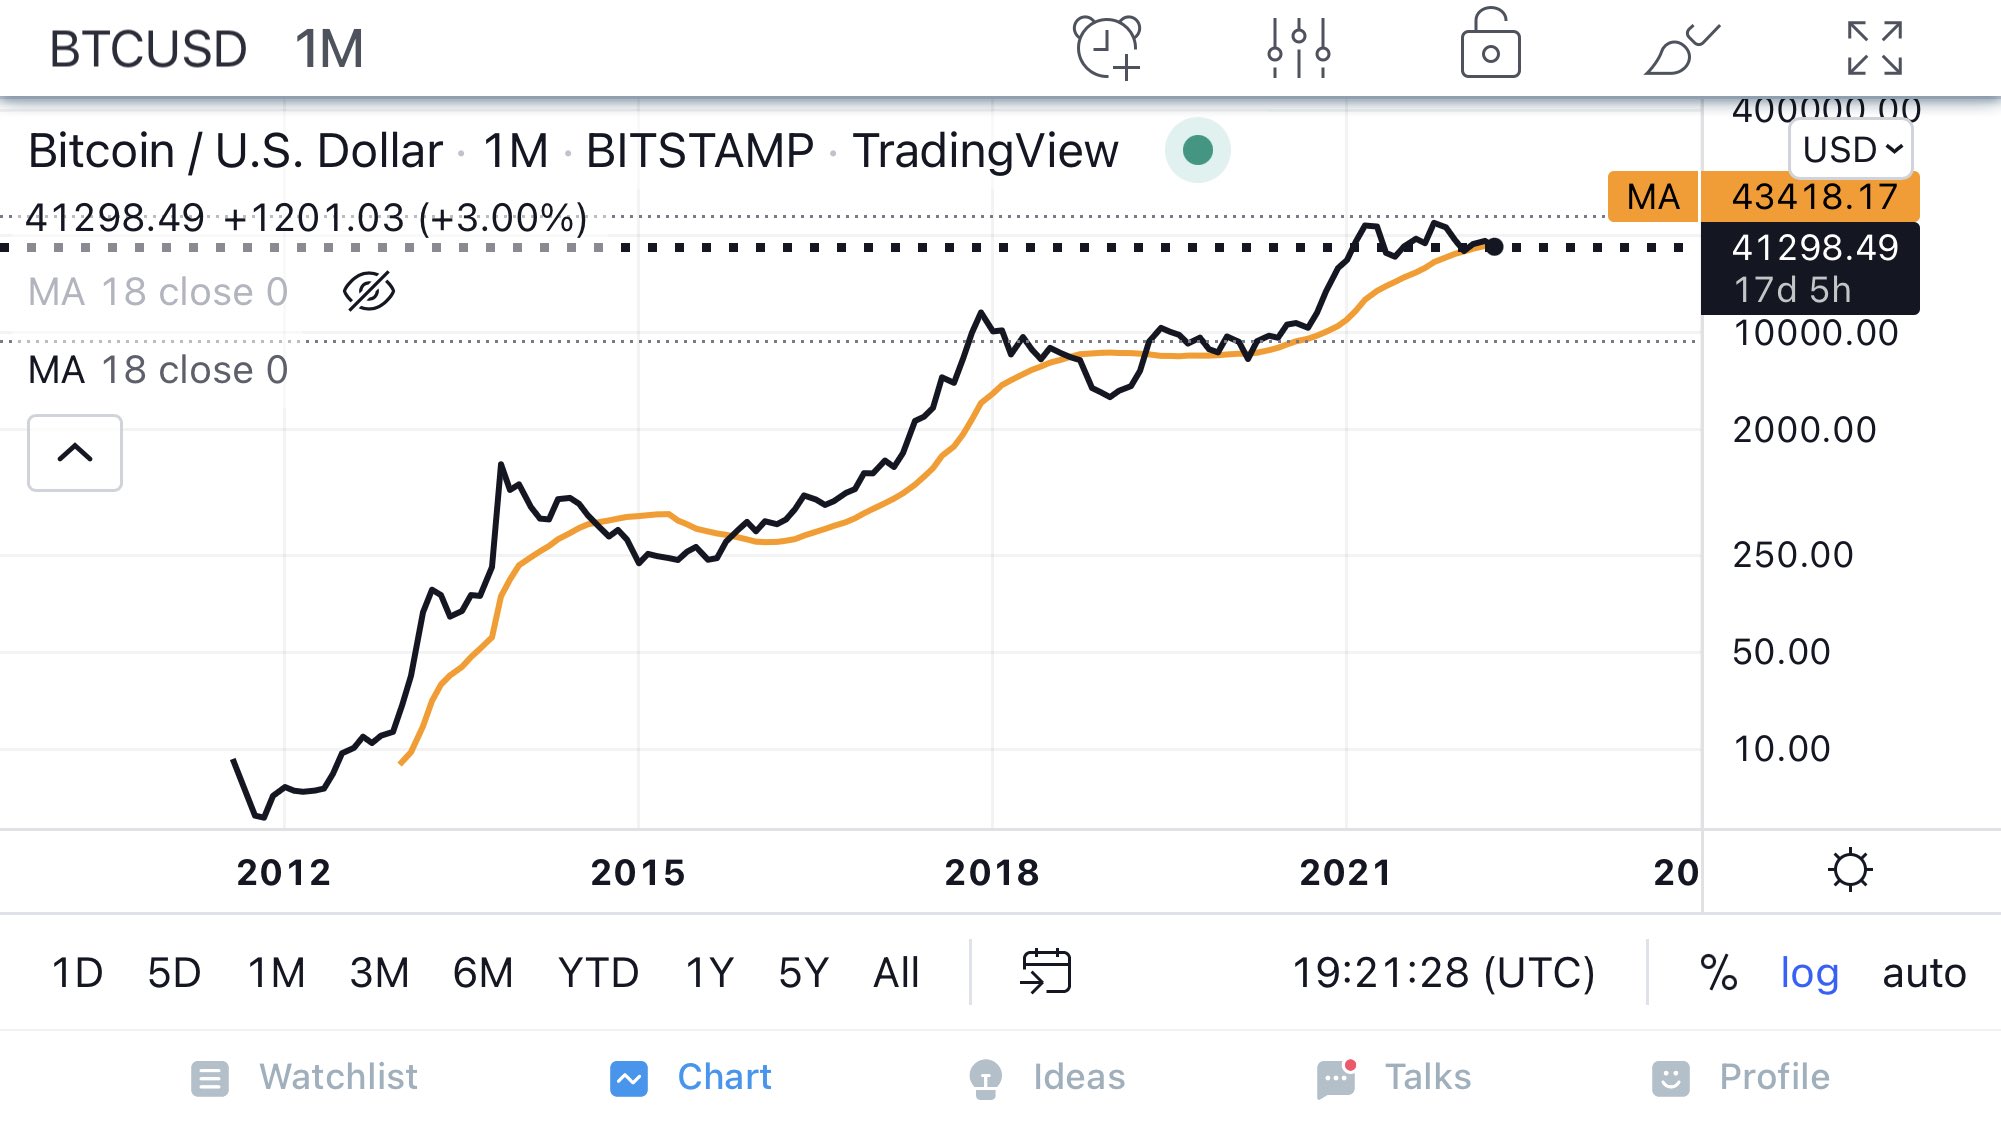 ViMoney: Peter Brandt dự đoán giá Bitcoin có thể tăng gấp 10 lần sau hai năm